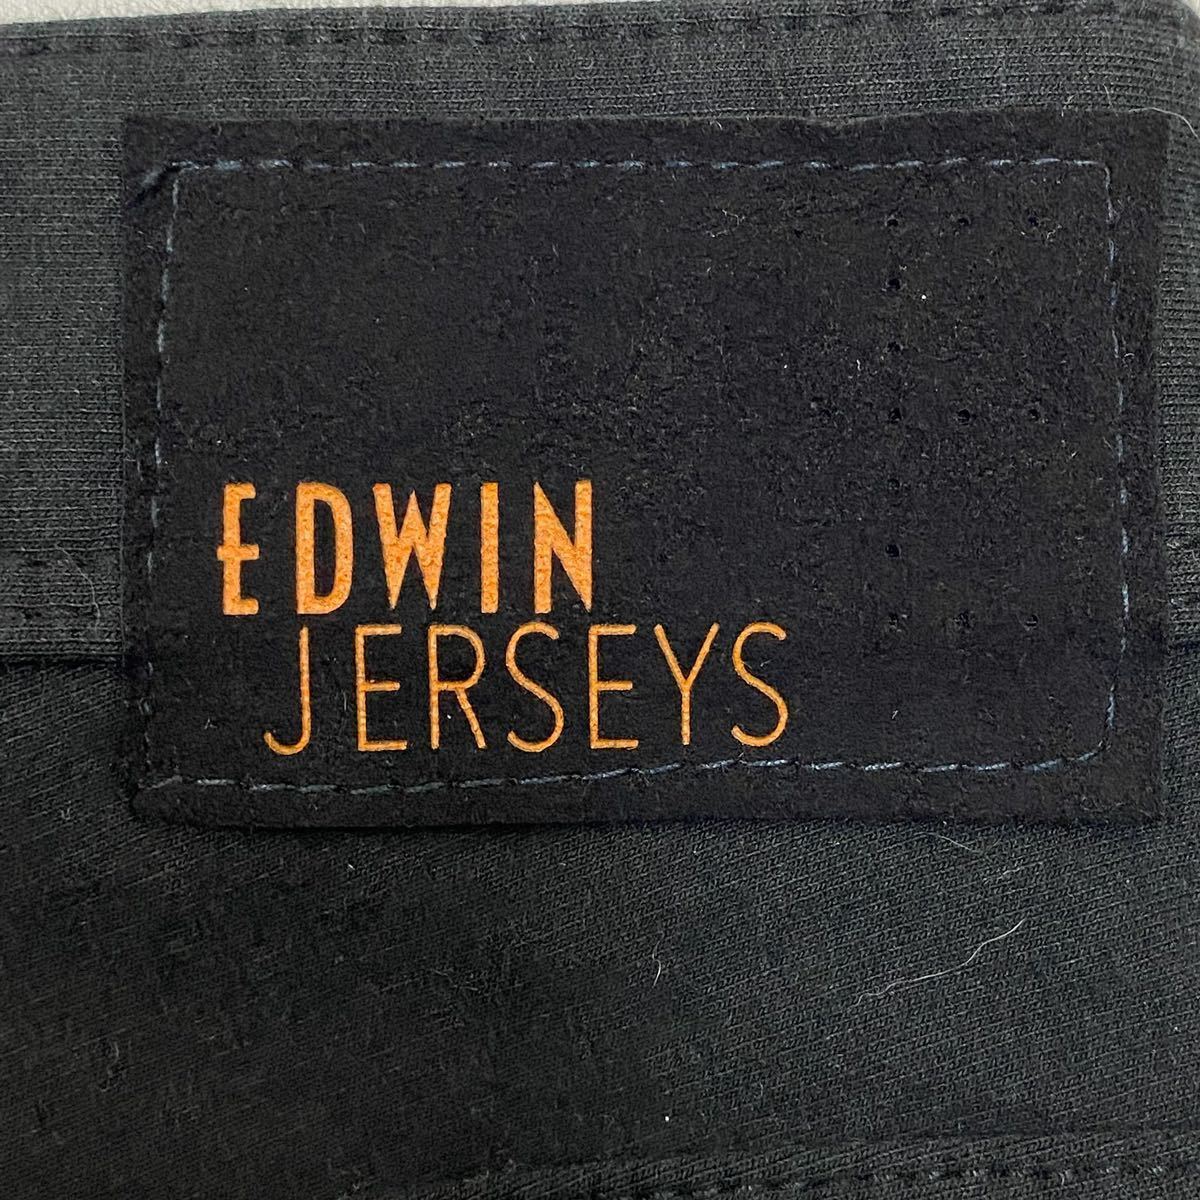 jerseys edwin